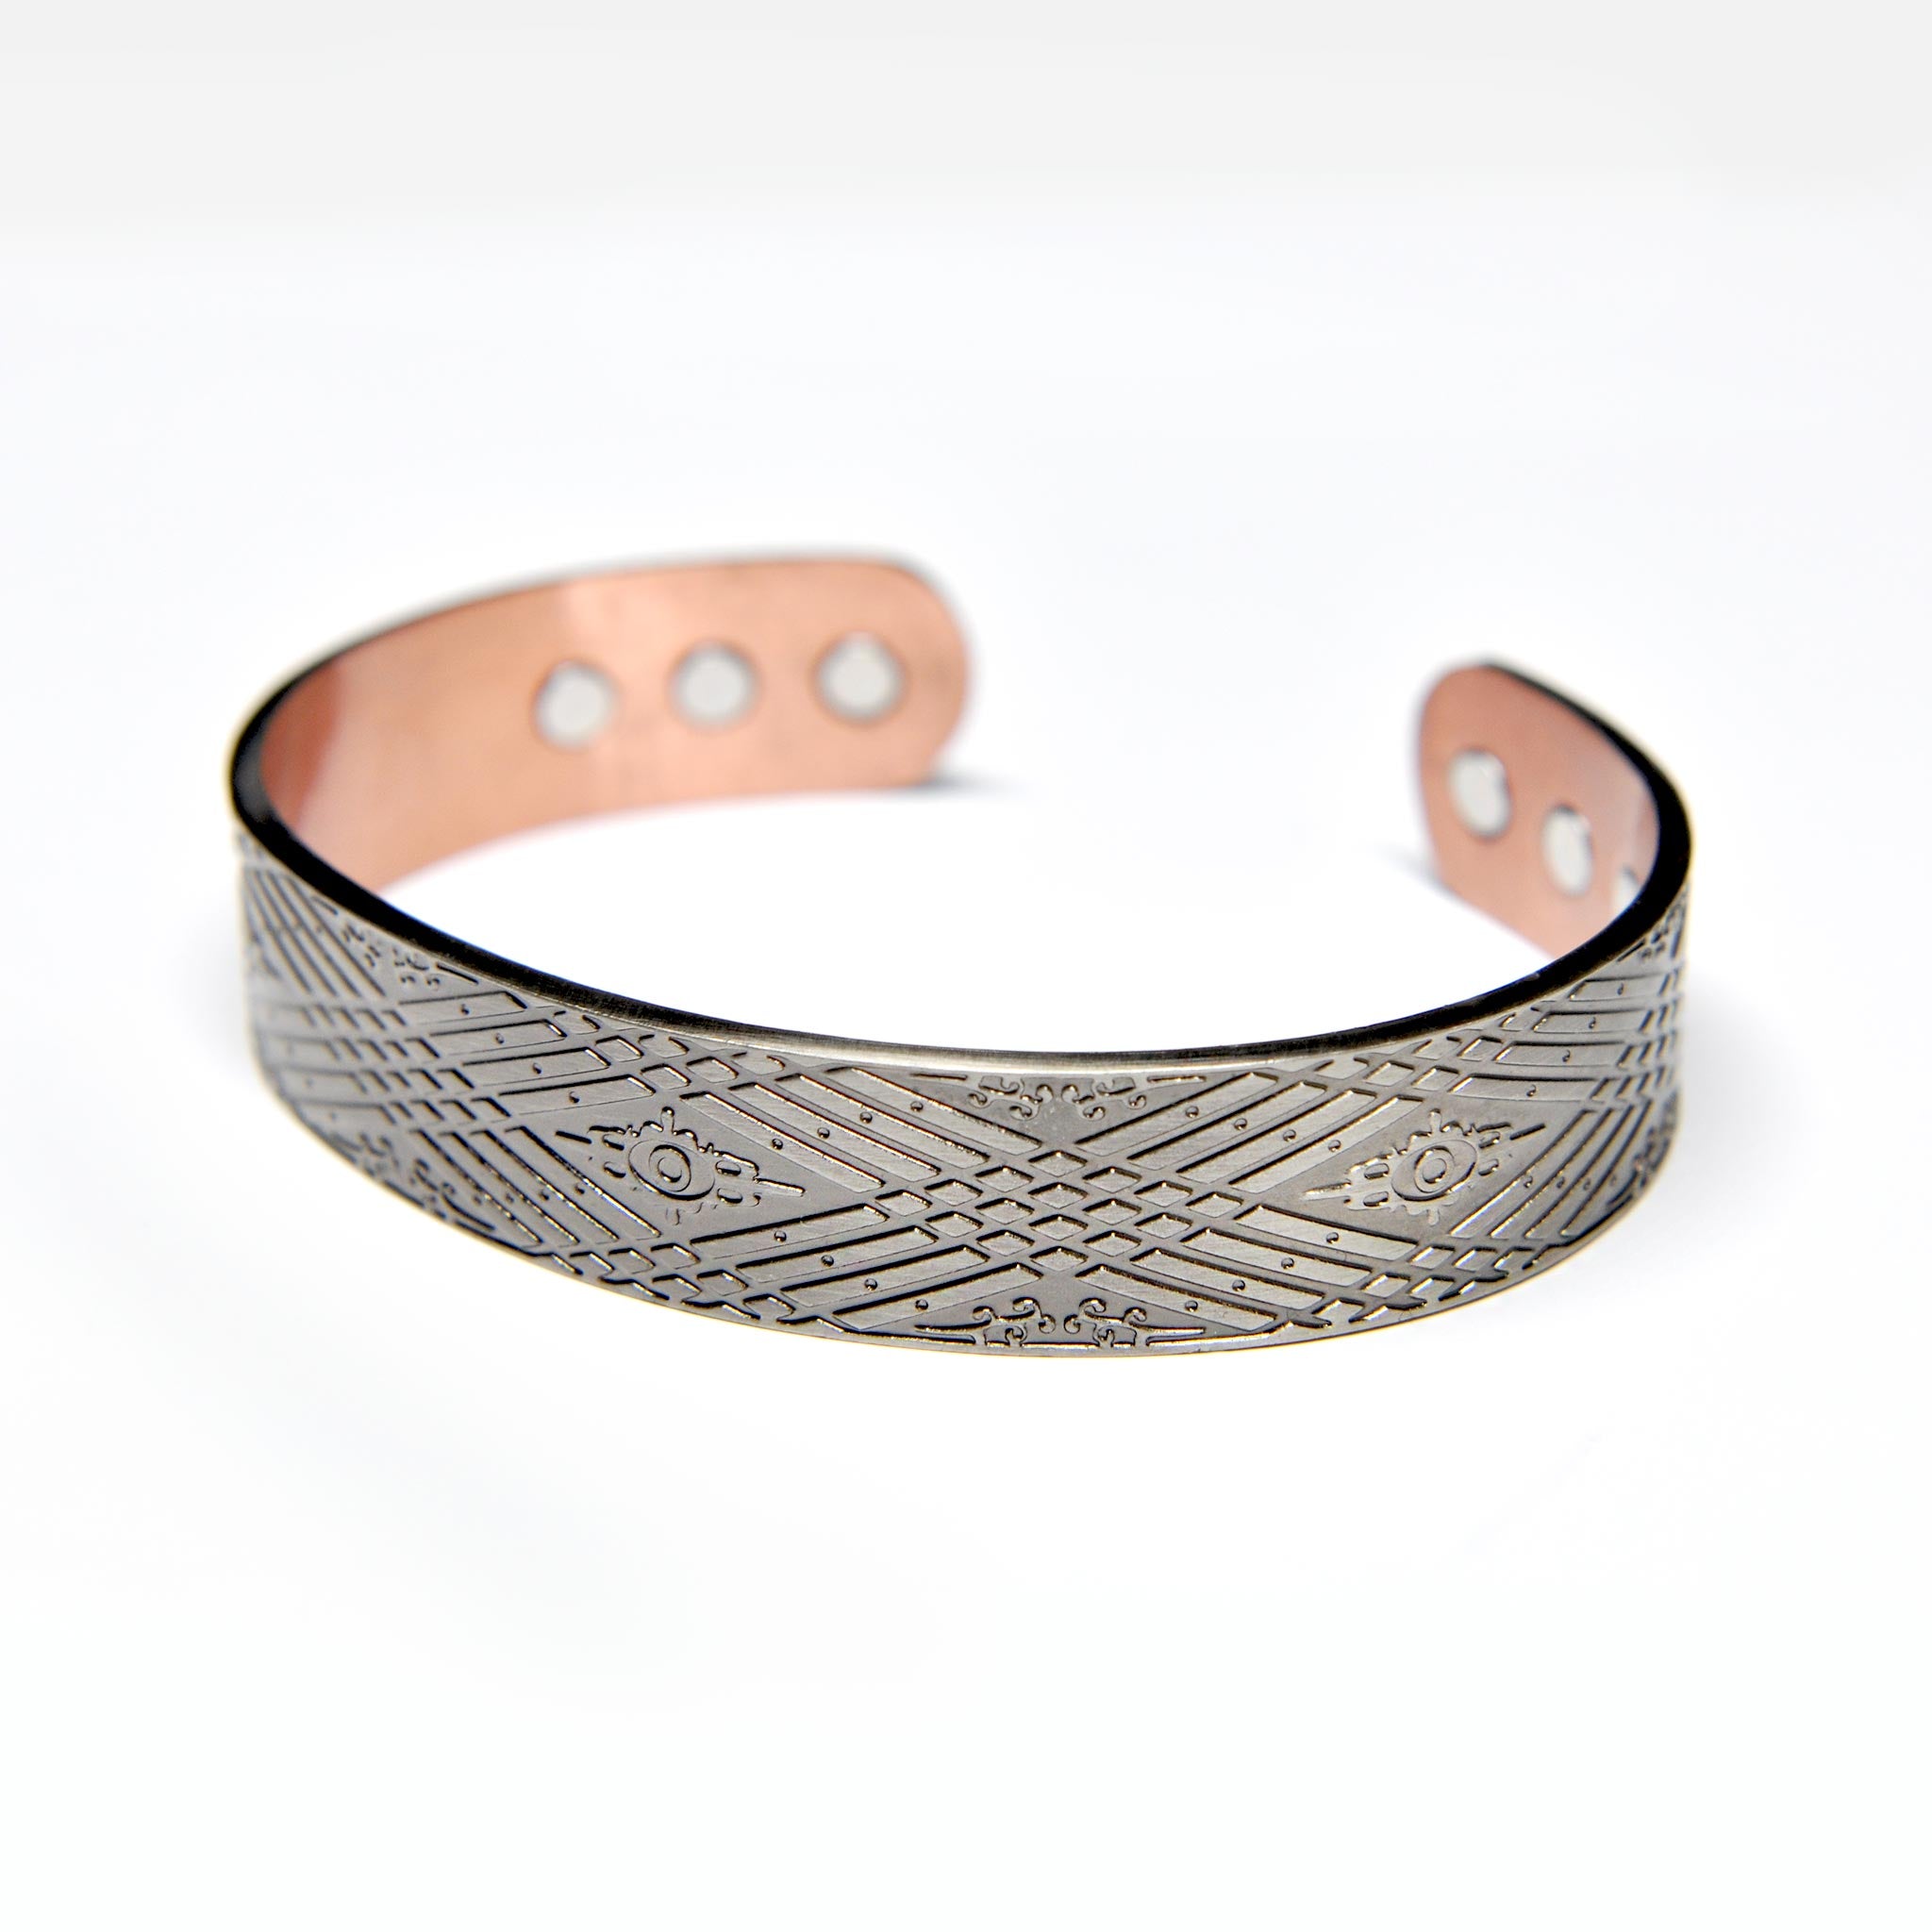  Designer bracelets